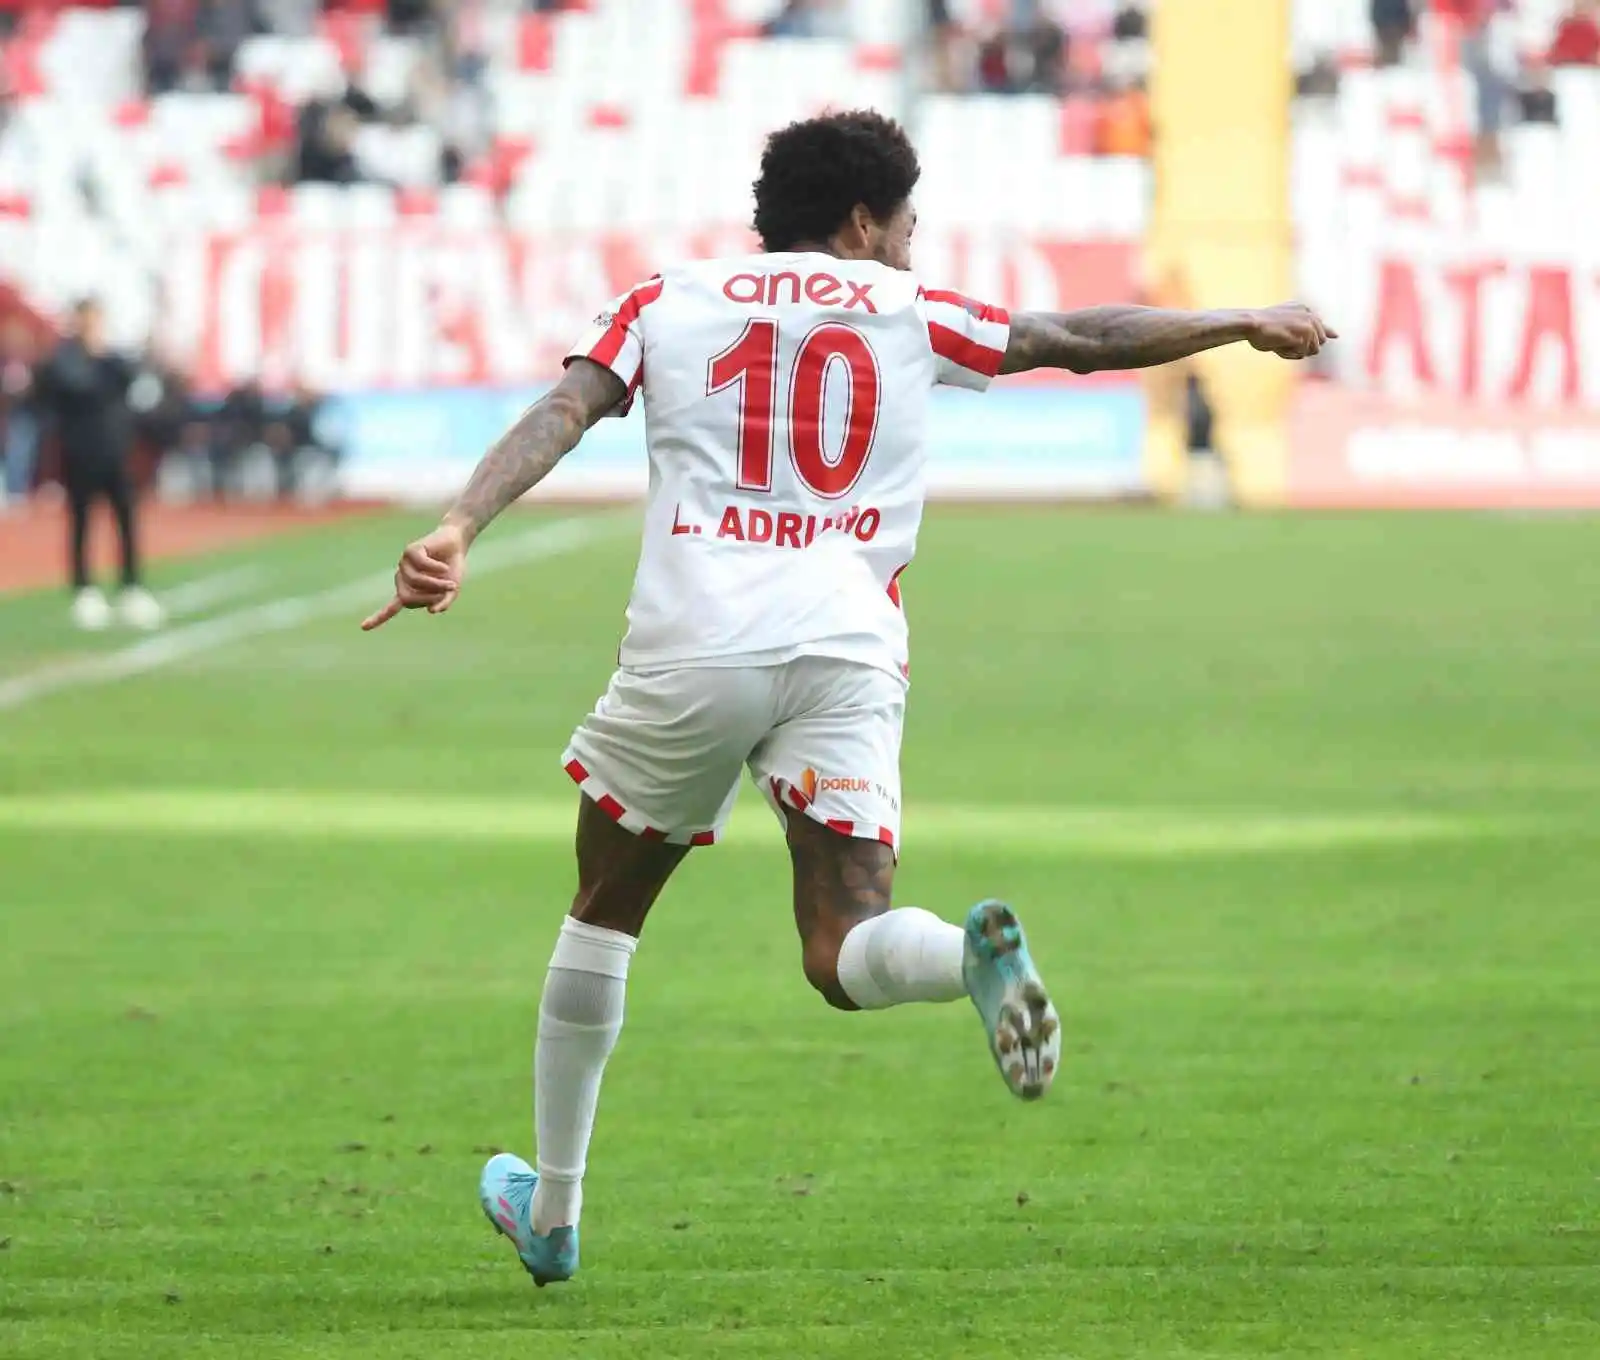 Spor Toto Süper Lig: FTA Antalyaspor: 2 - Giresunspor: 2 (Maç sonucu)
